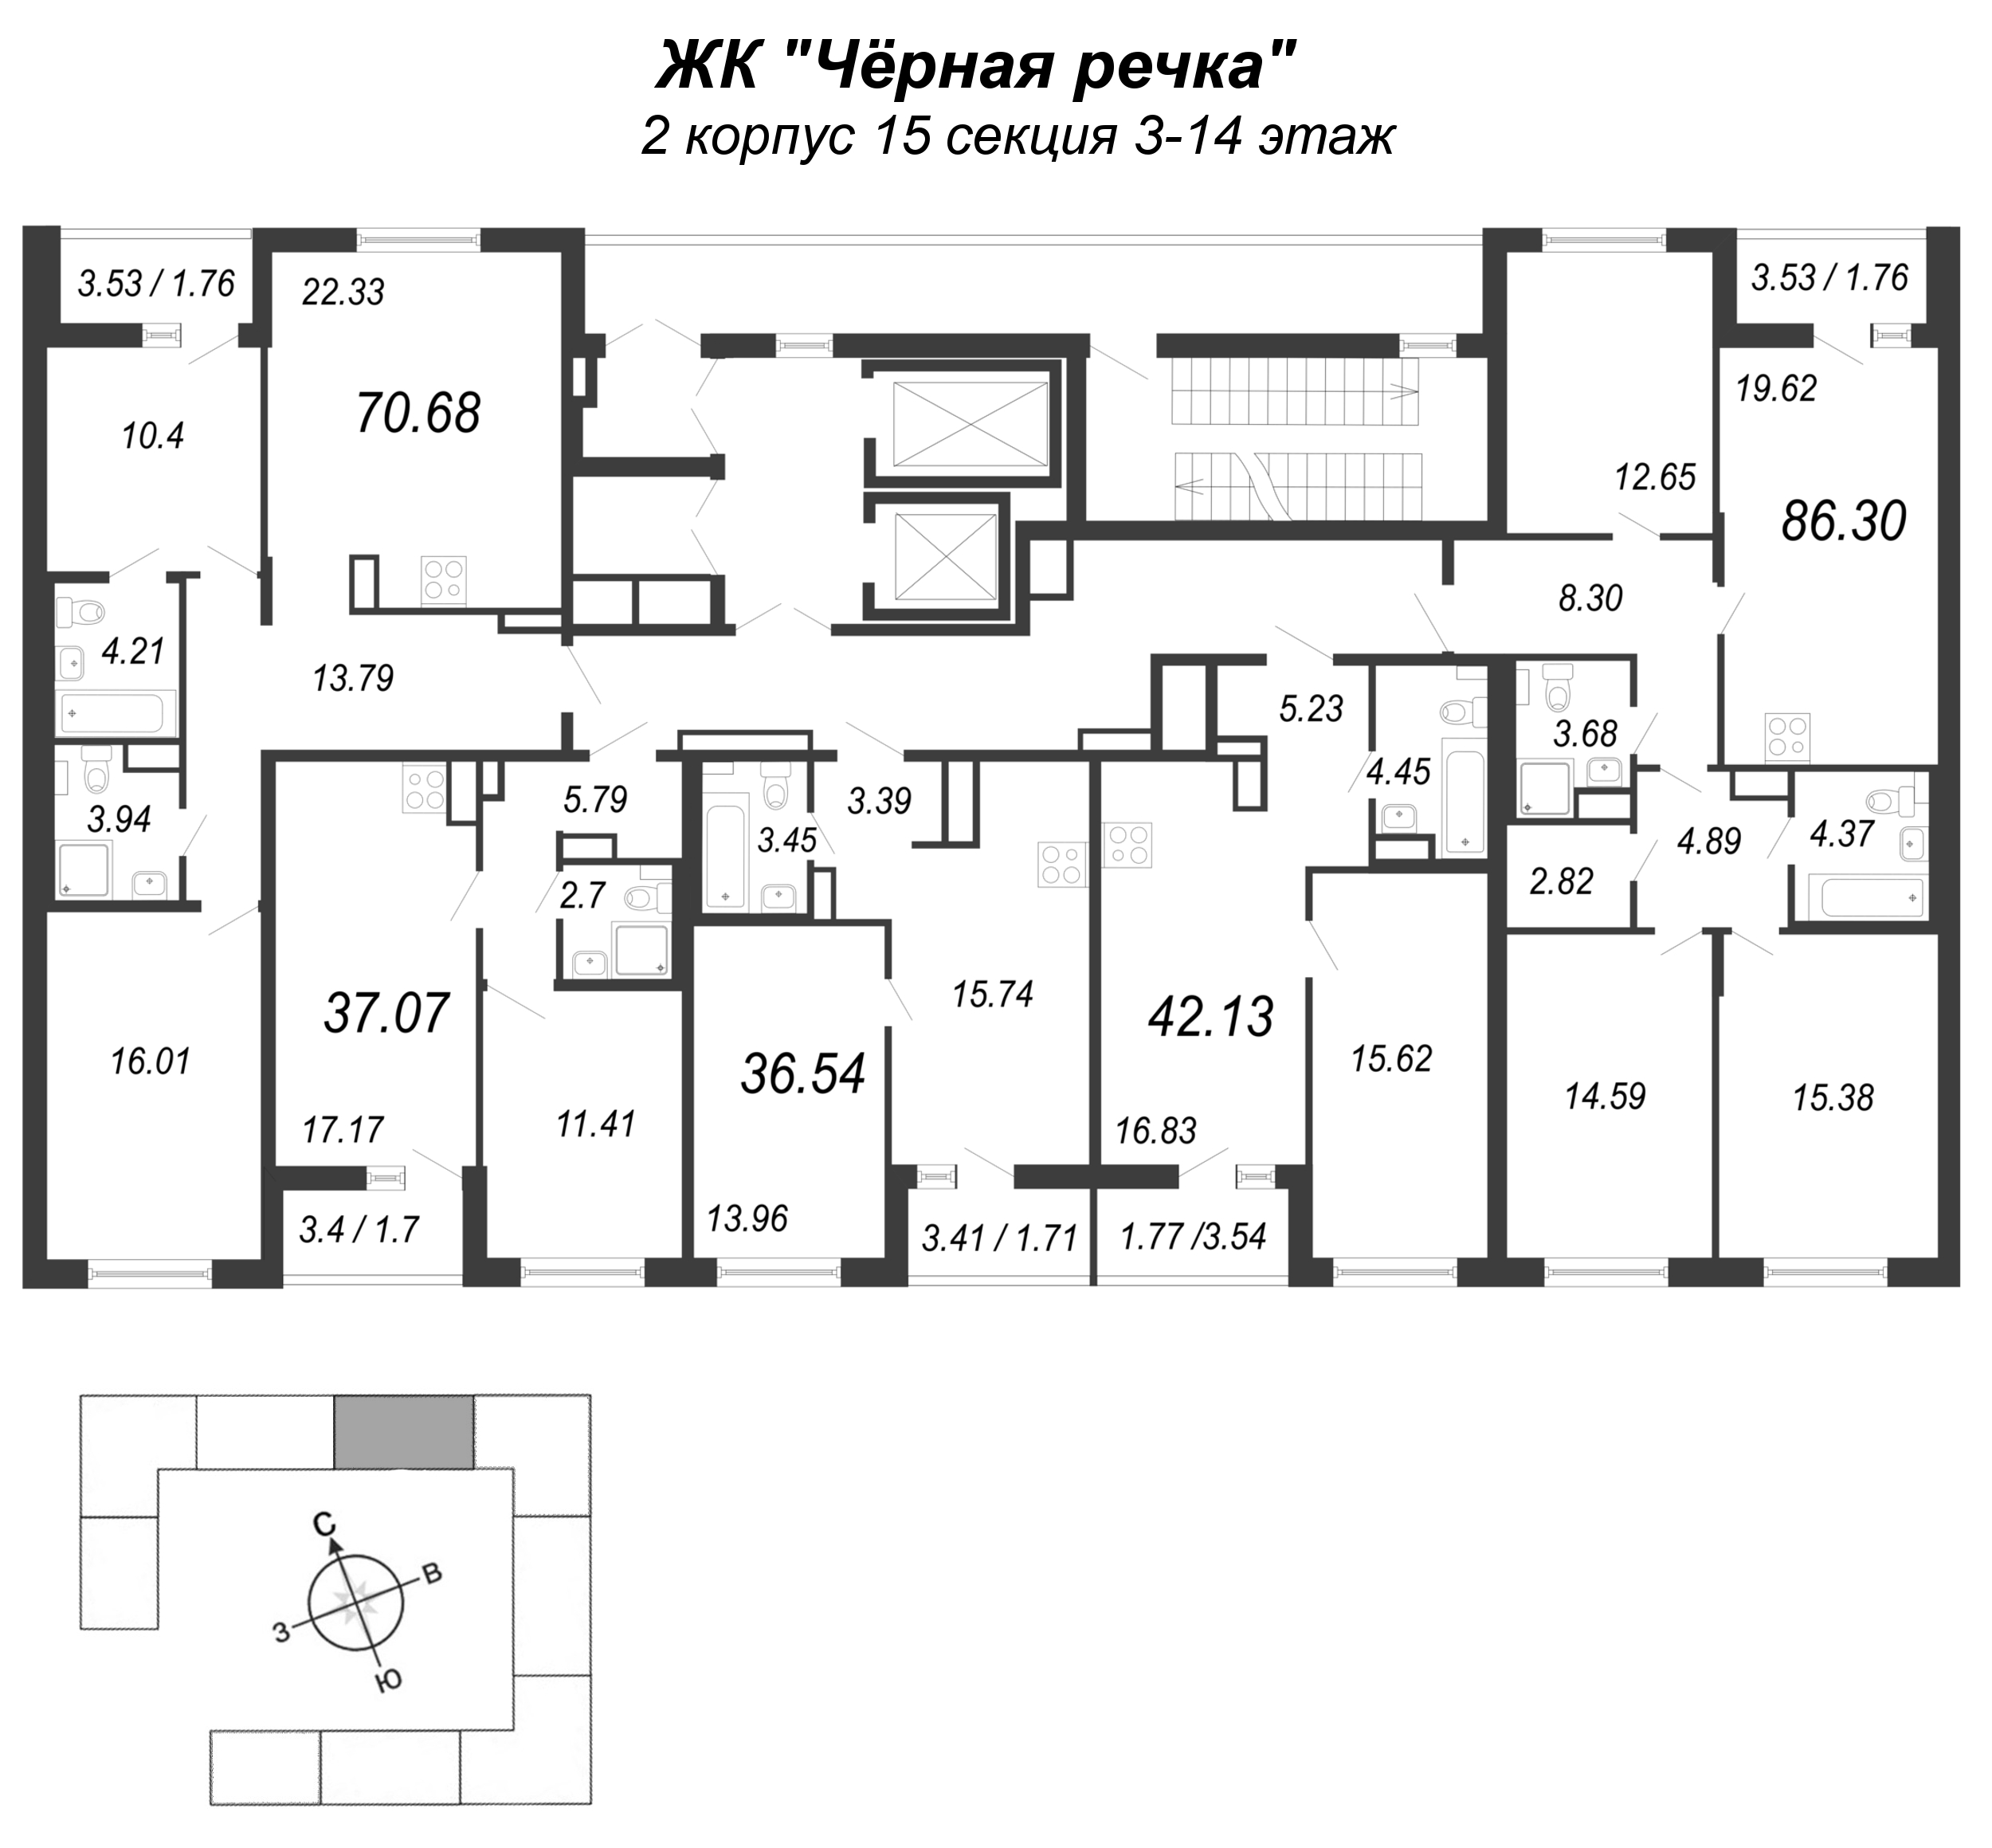 2-комнатная (Евро) квартира, 37.07 м² в ЖК "Чёрная речка" - планировка этажа